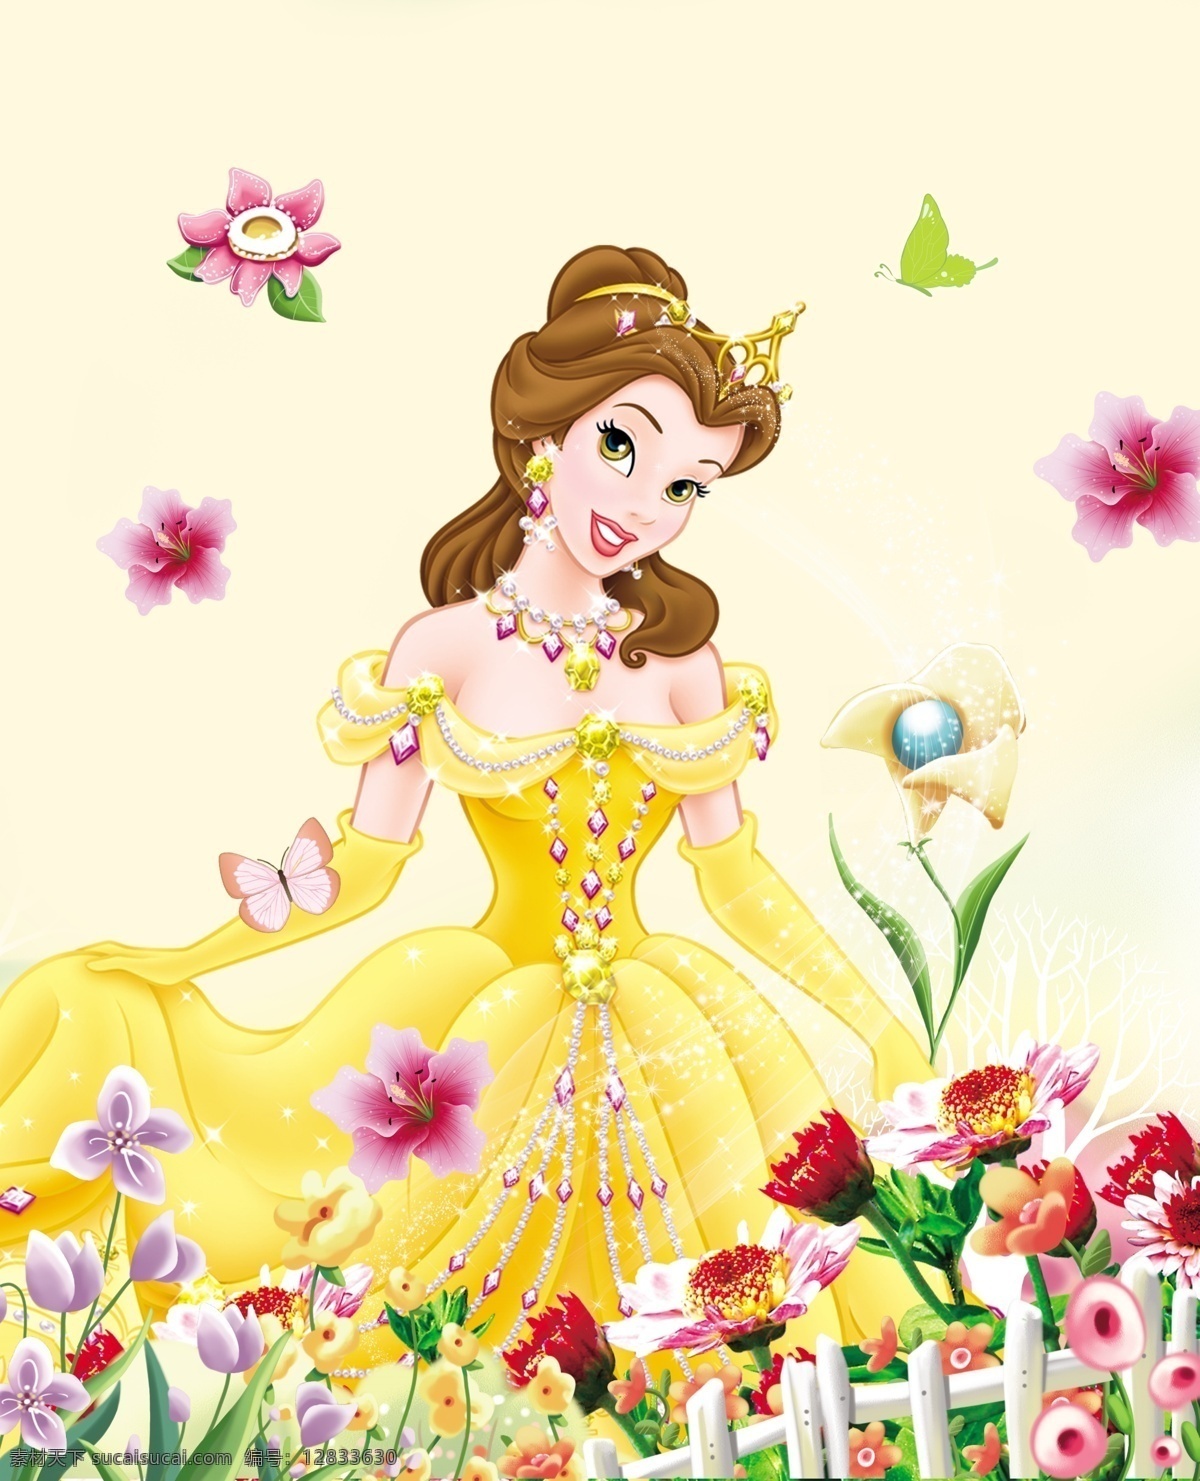 迪斯尼公主 迪斯尼 公主 人物 漂亮公主 印花图案 花 文化艺术